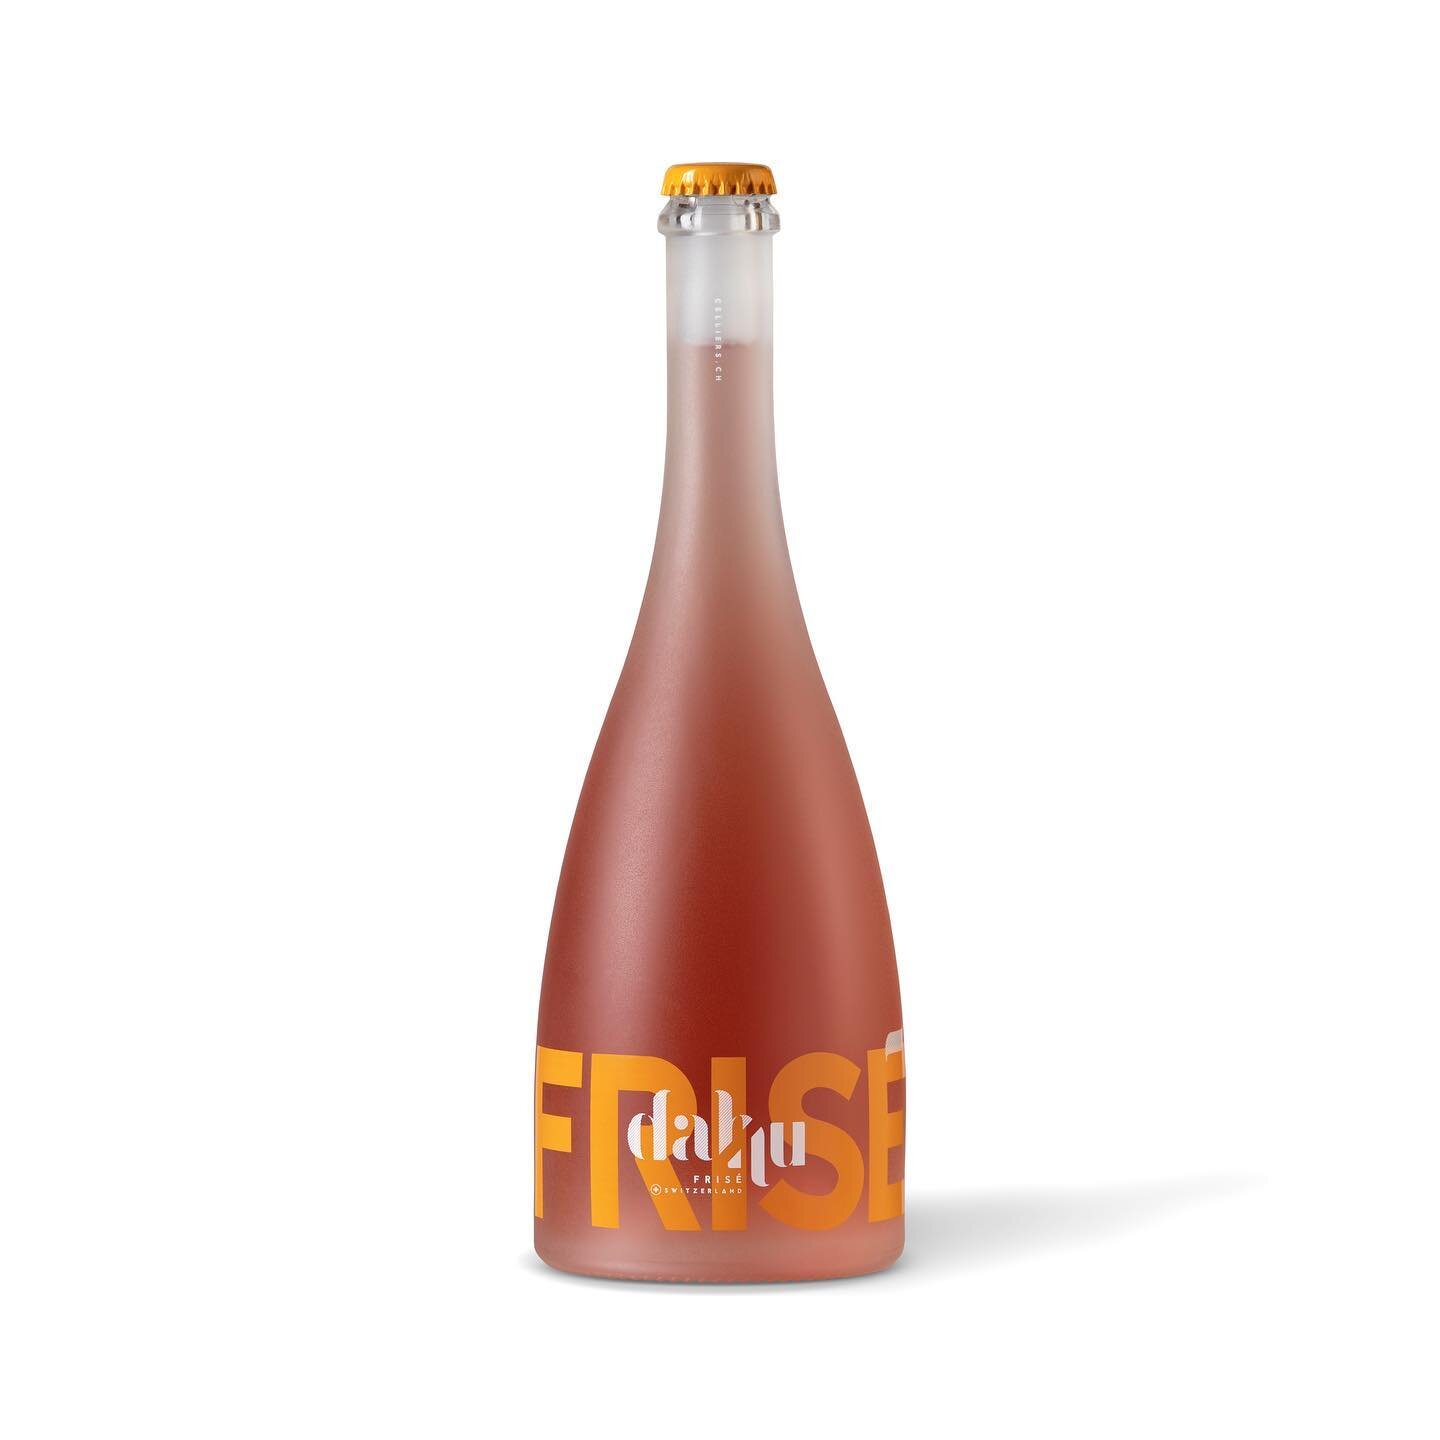 Identit&eacute; visuelle et packaging pour le Dahu fris&eacute; des Celliers de Sion

#lesceliersdesion #dahu #packagingdesign #winepackaging #swisswine #vinsduvalais